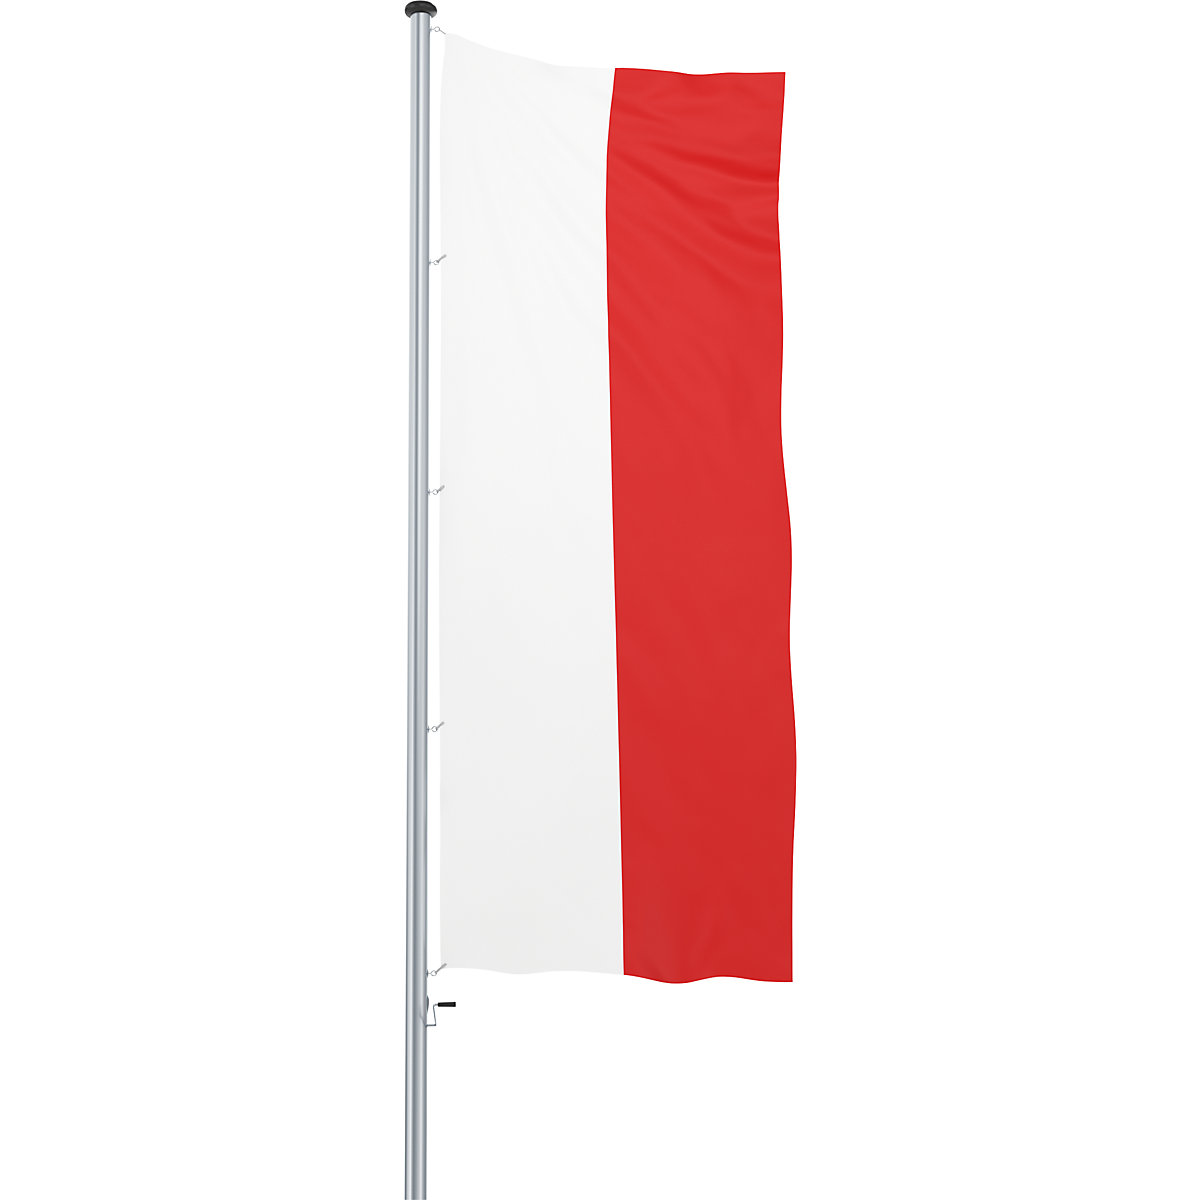 Mannus – Bandera para izar/bandera del país (Imagen del producto 55)